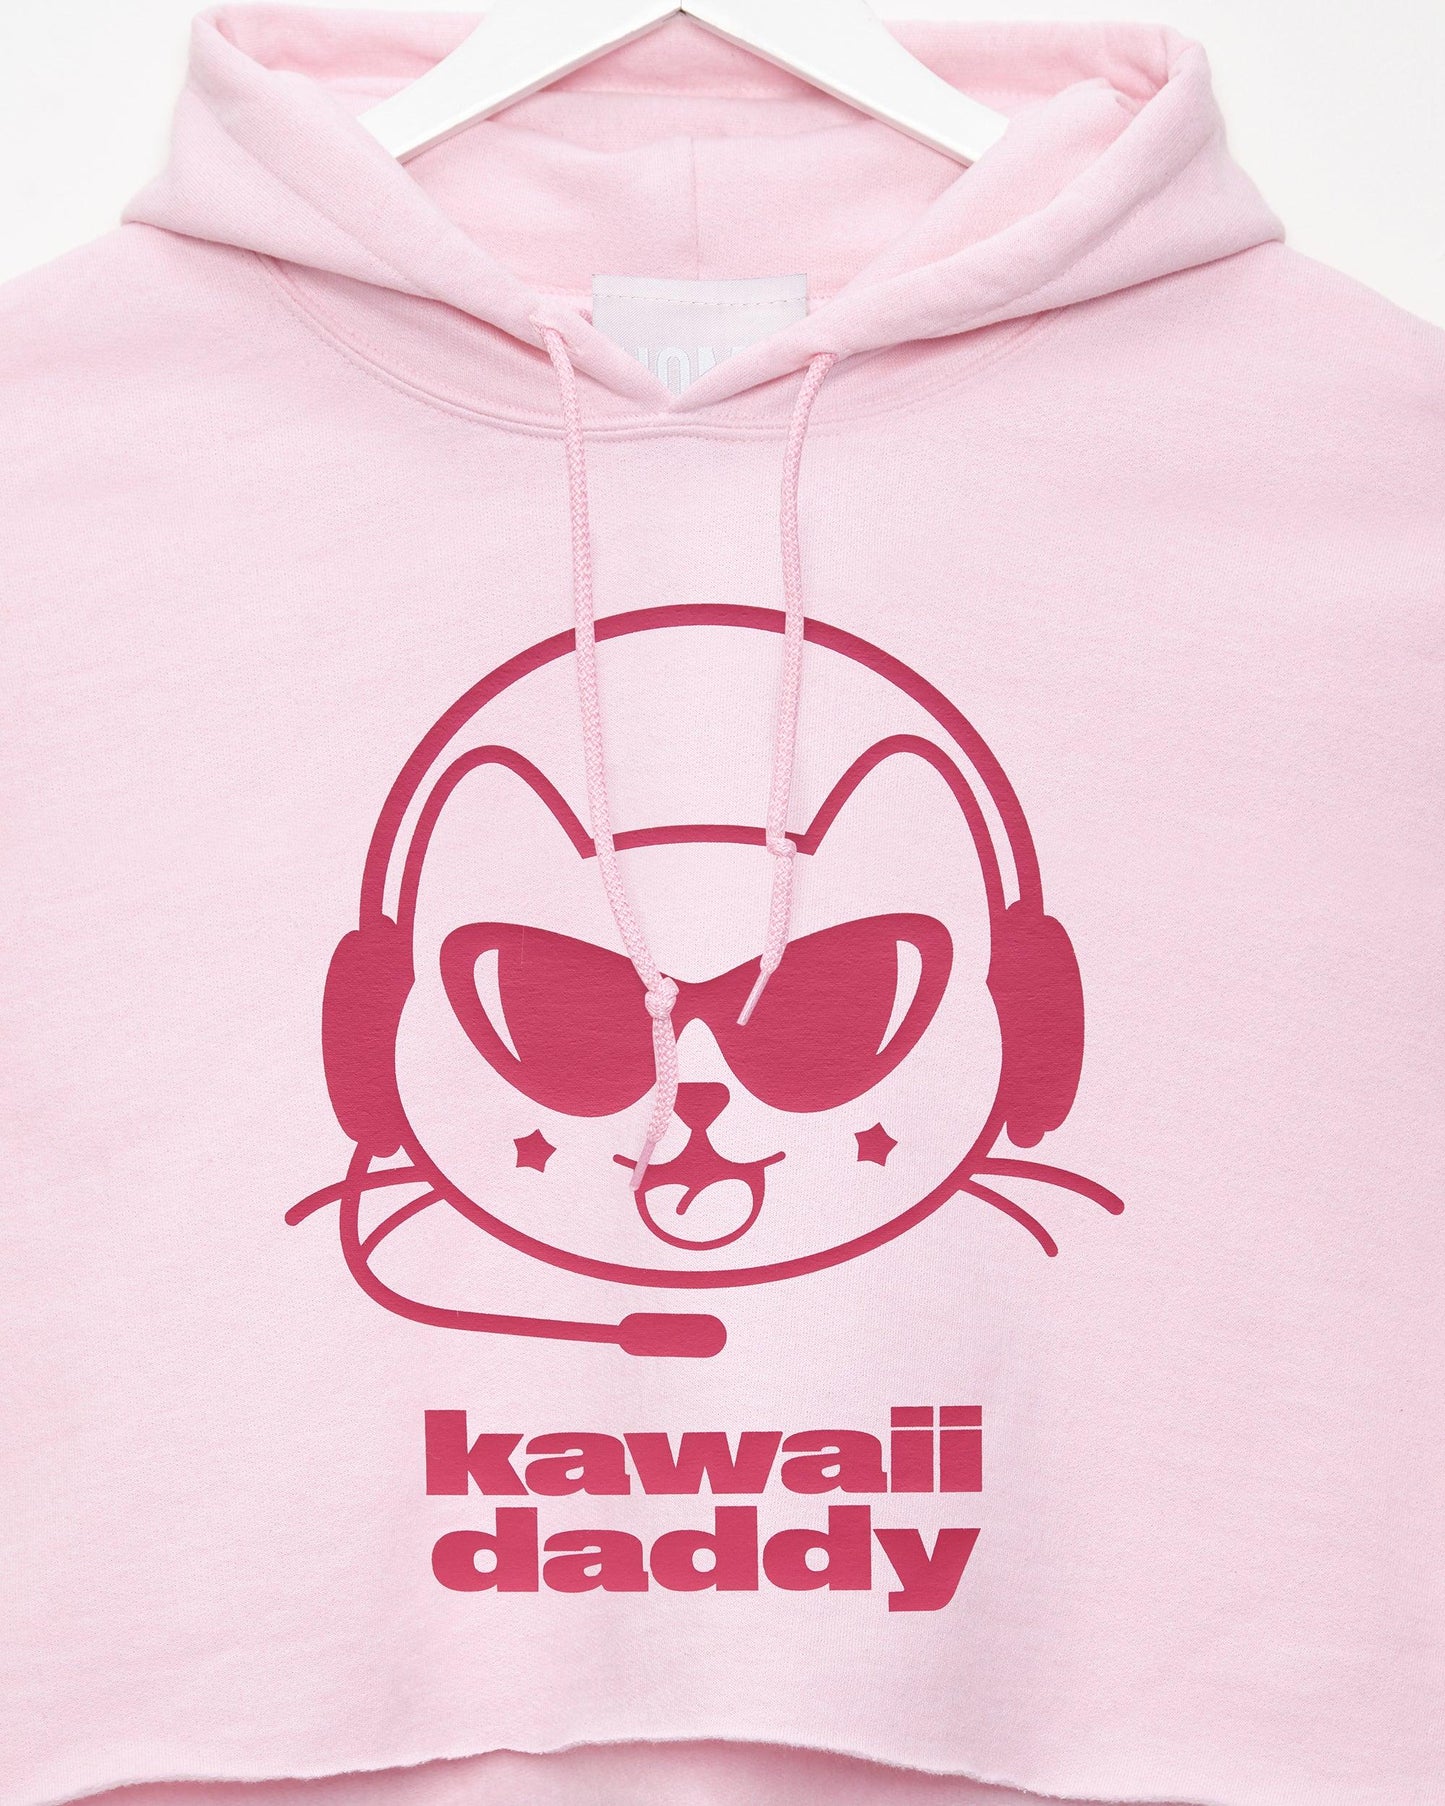 Kawaii daddy, fuchsia/pink - hooded crop top